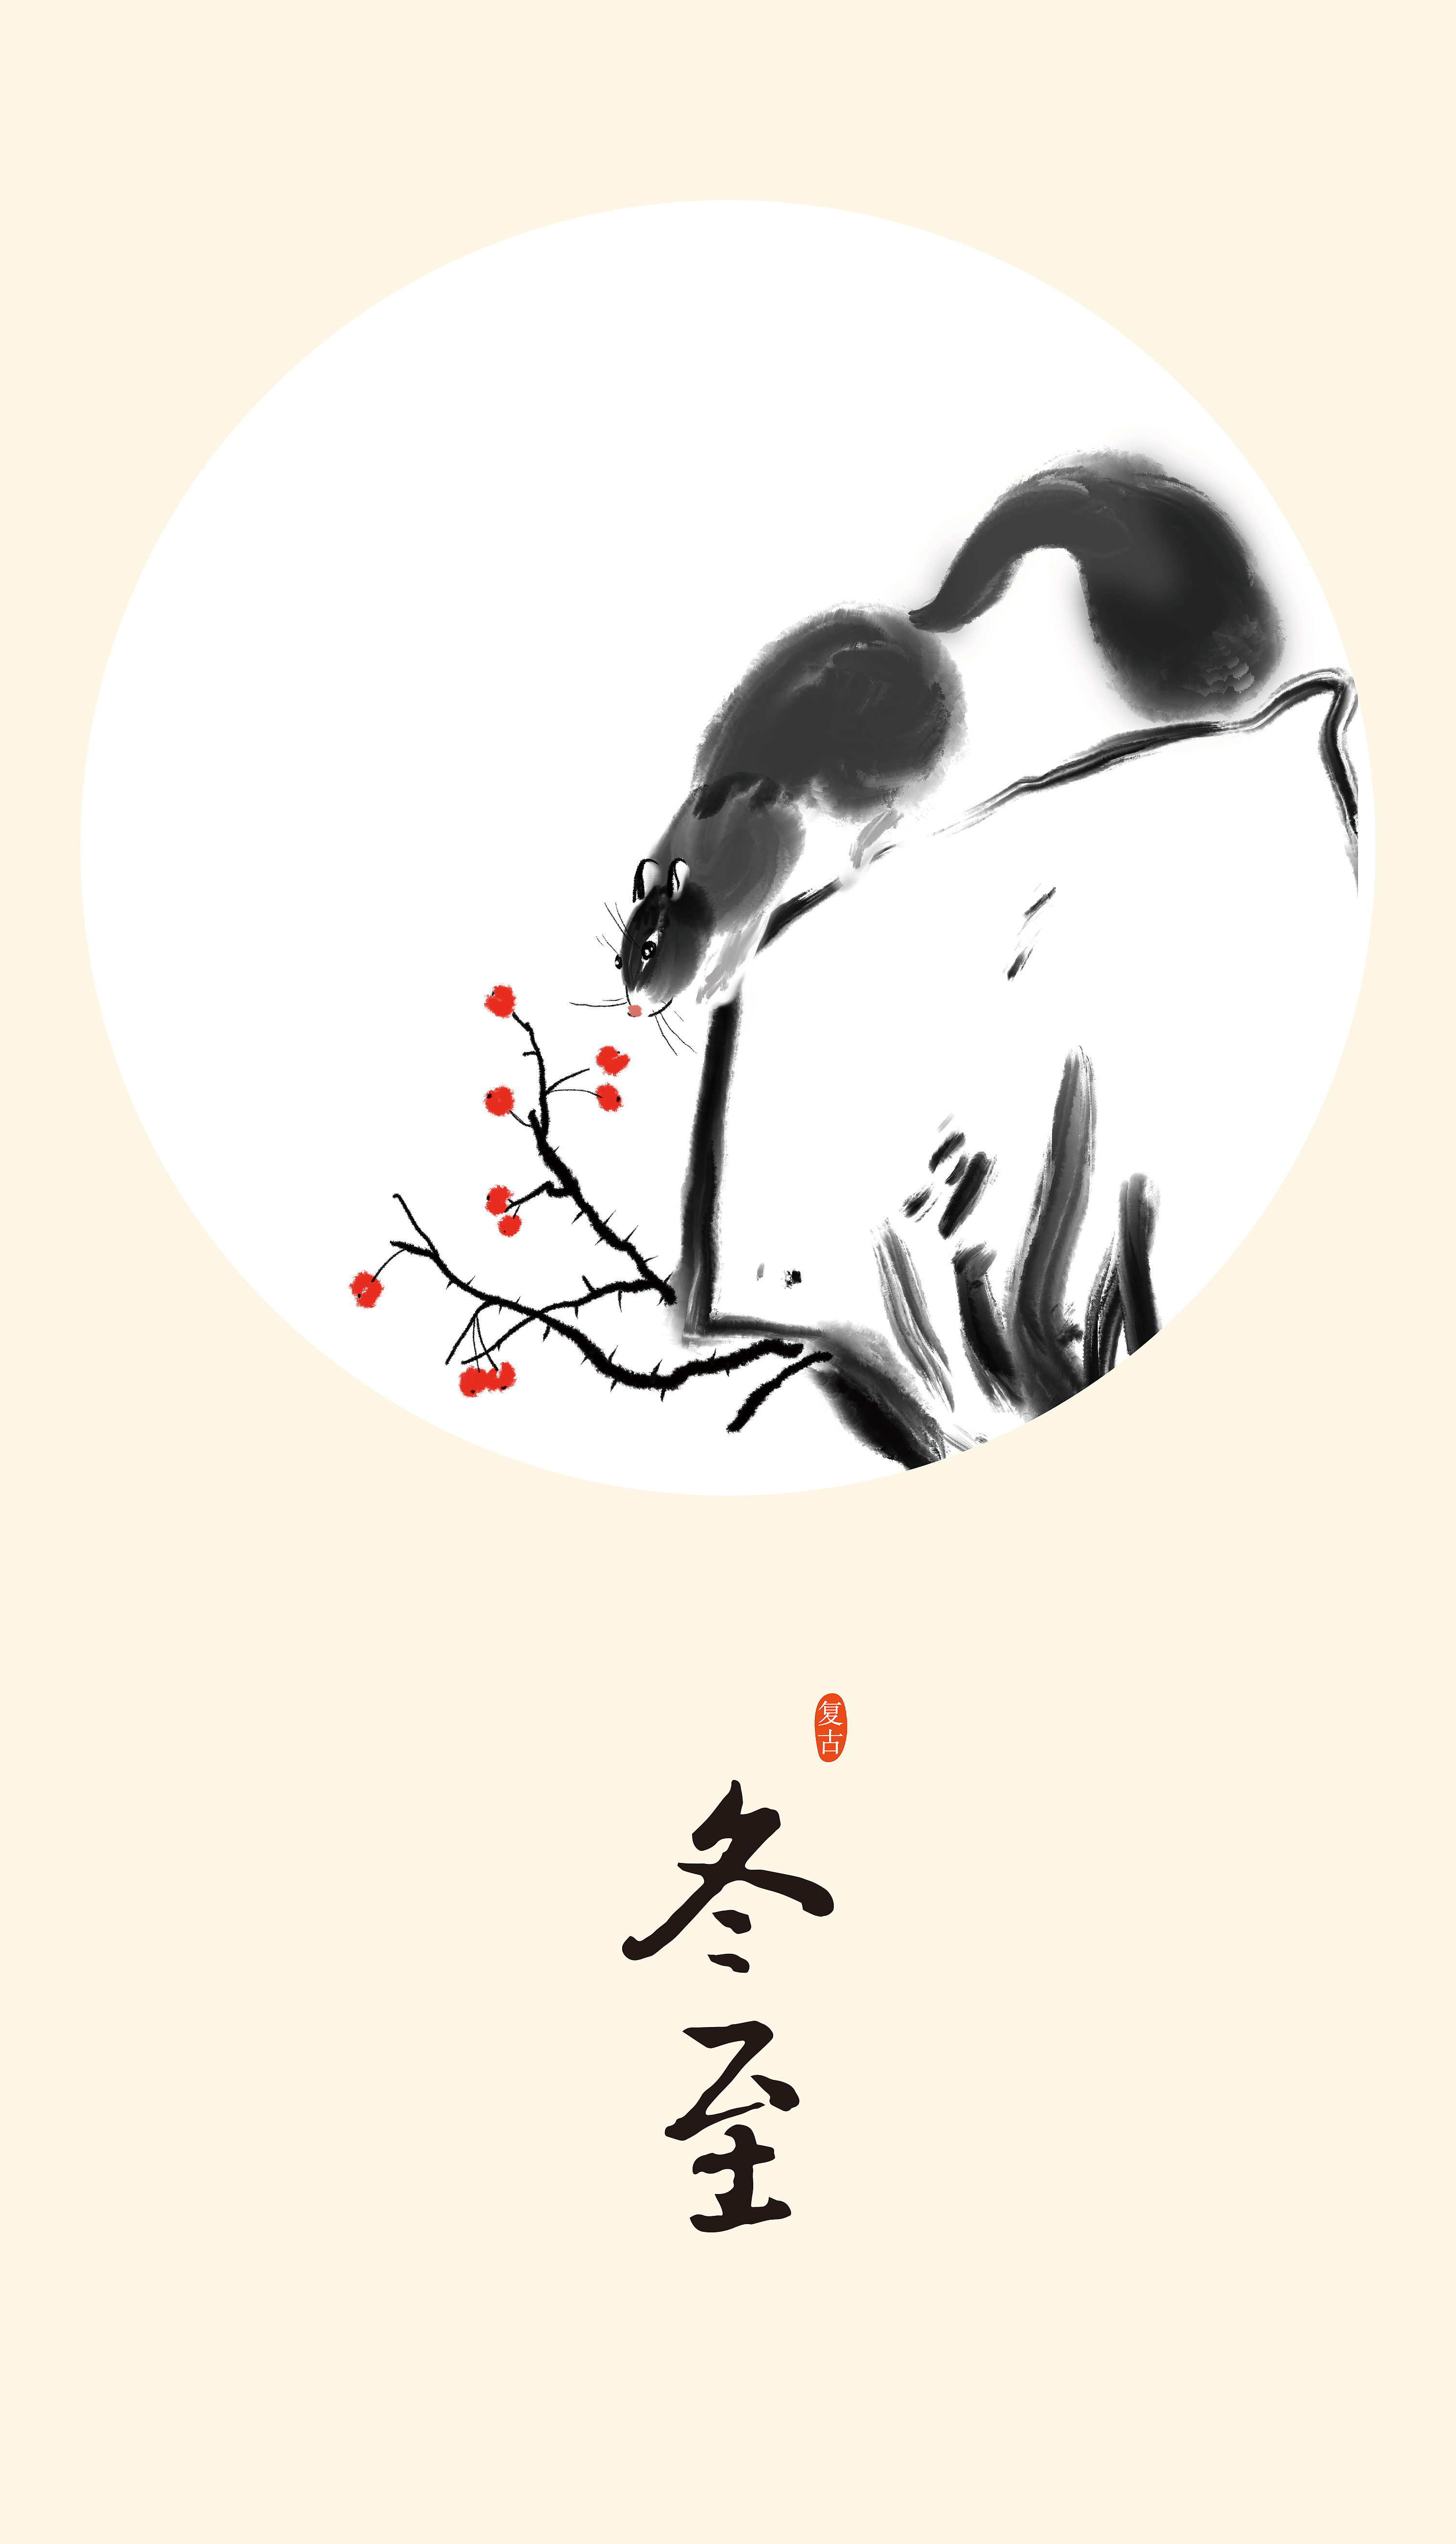 灰绿色惊蛰节气古风水墨中国风手绘节气节日分享中文海报 - 模板 - Canva可画